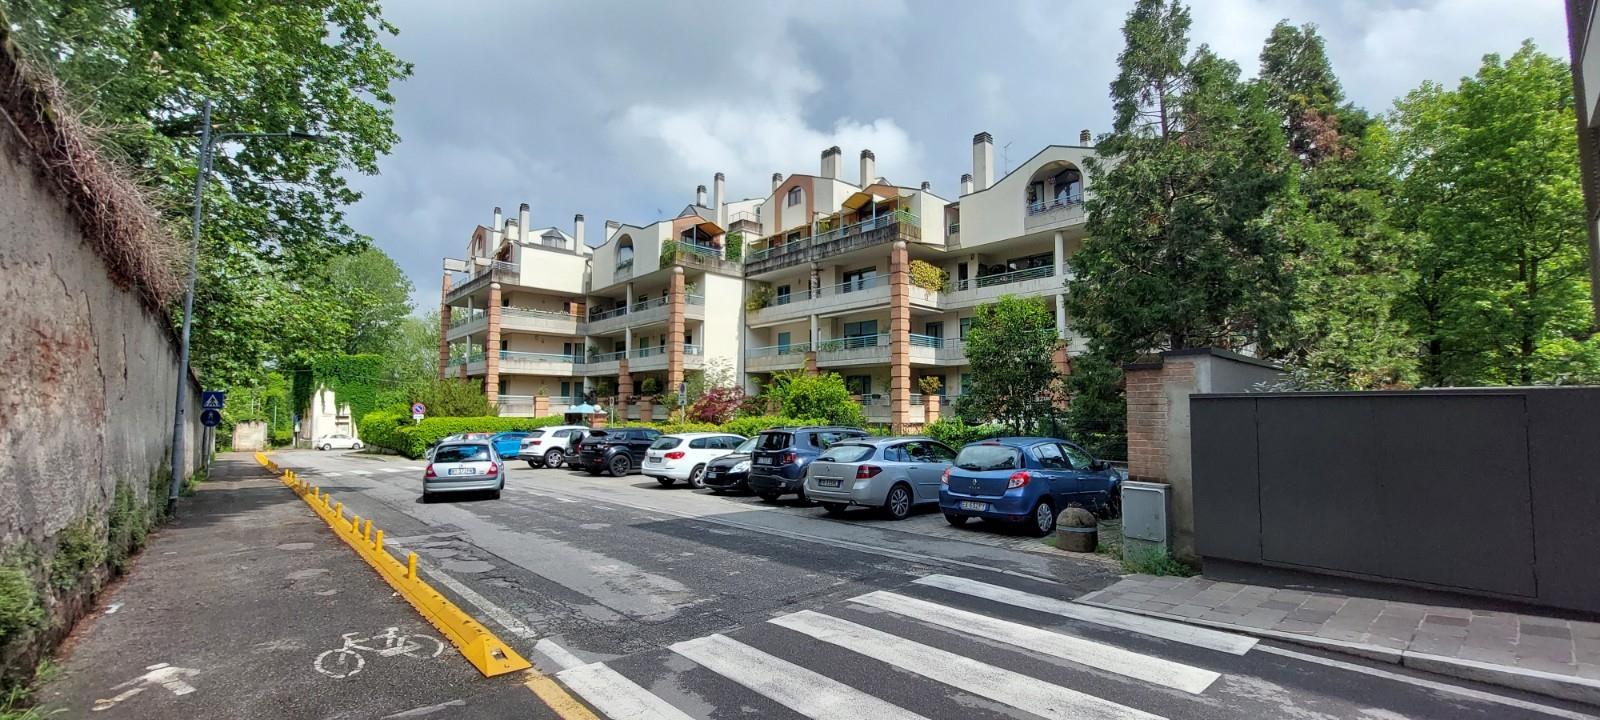 VILLASANTA CENTRO - Fronte Parco - Appartamento su due livelli con giardino